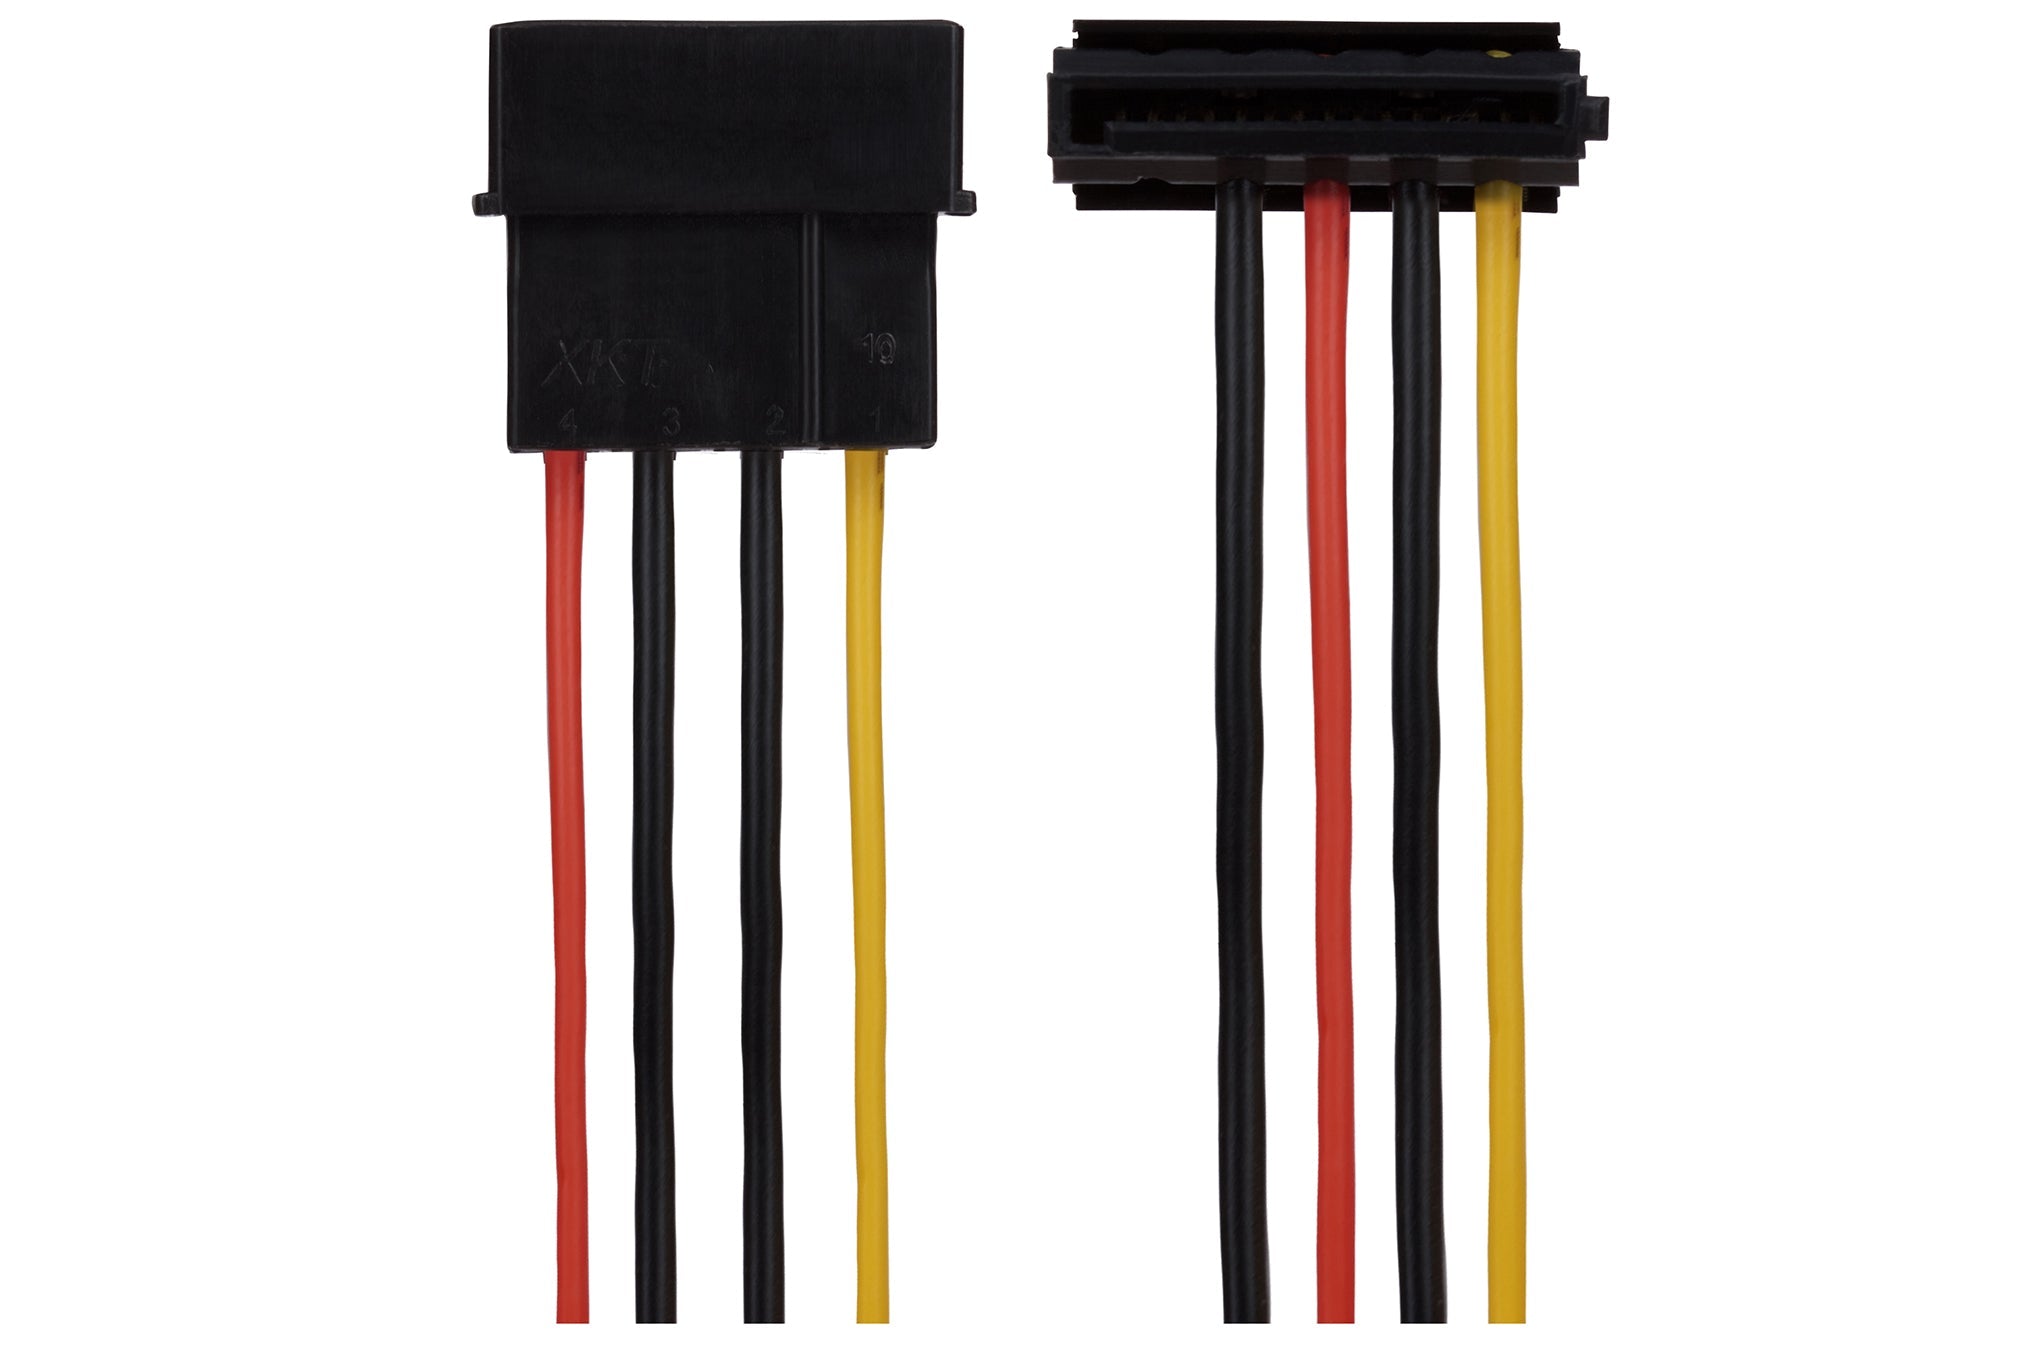 Maplin 4 Pin PSU Molex to 2x 15 Pin SATA Power Lead Cable - 0.35m